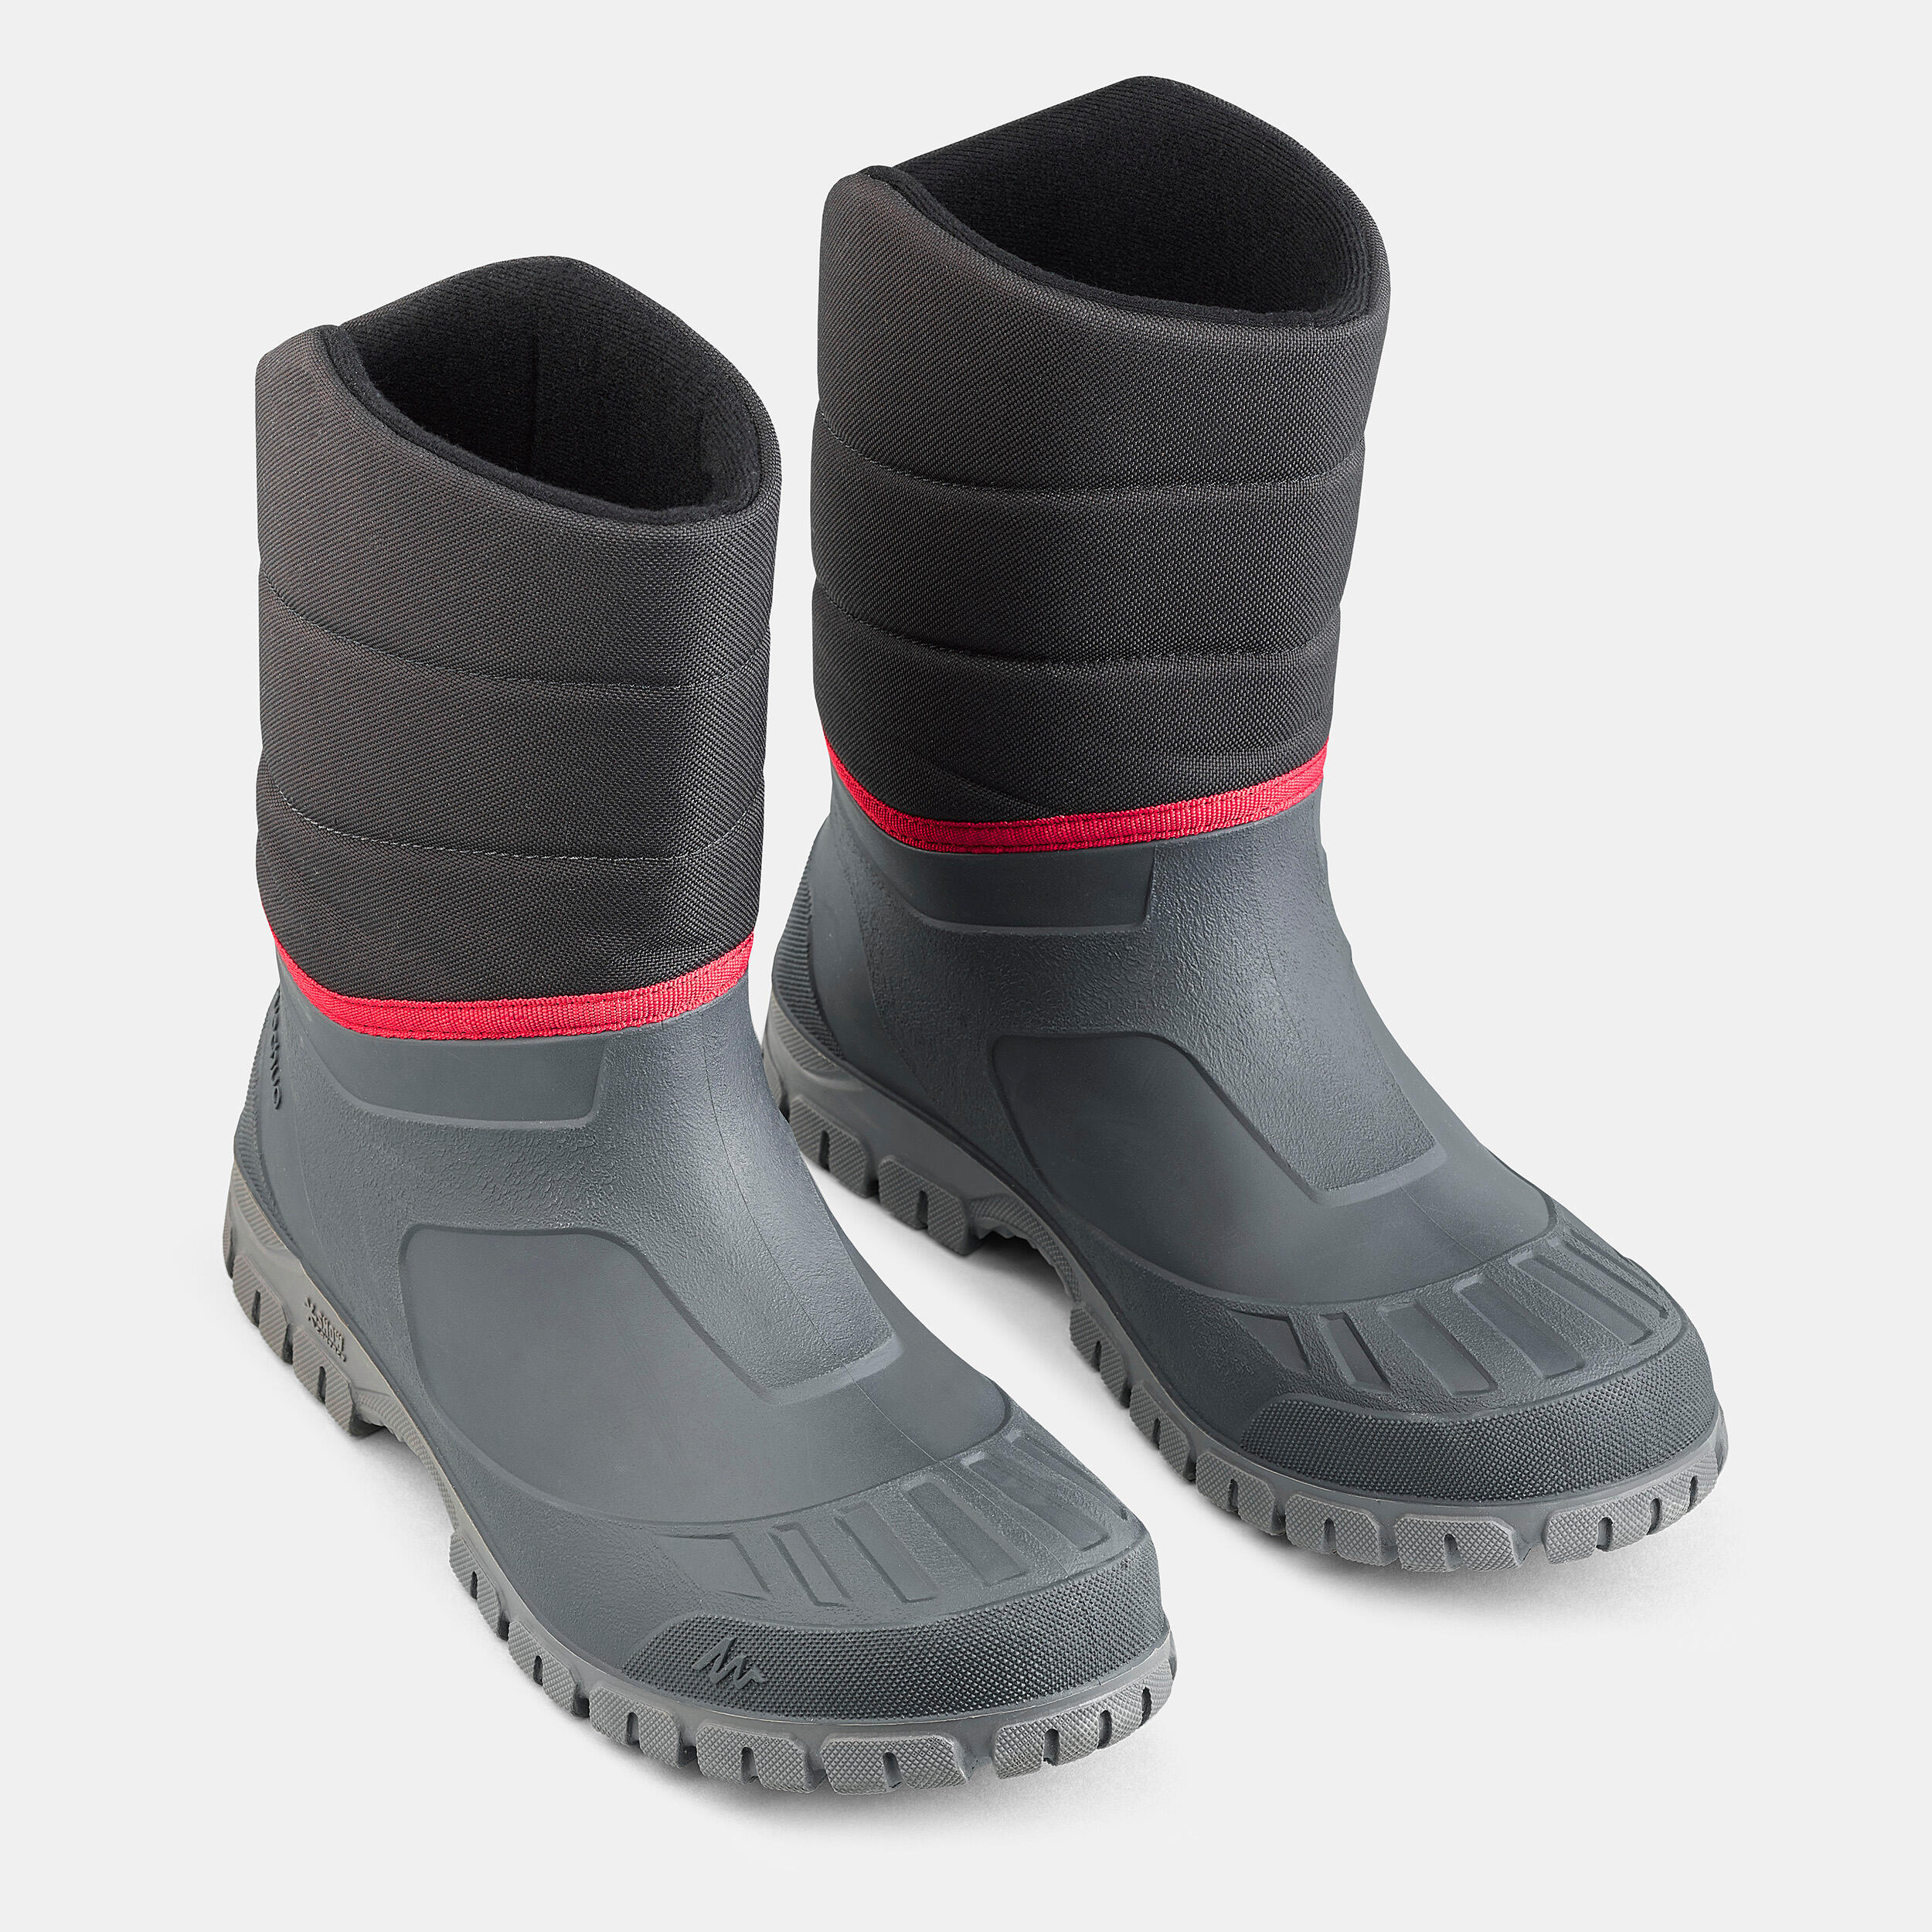 Men’s Winter Boots - SH 100 Black - QUECHUA